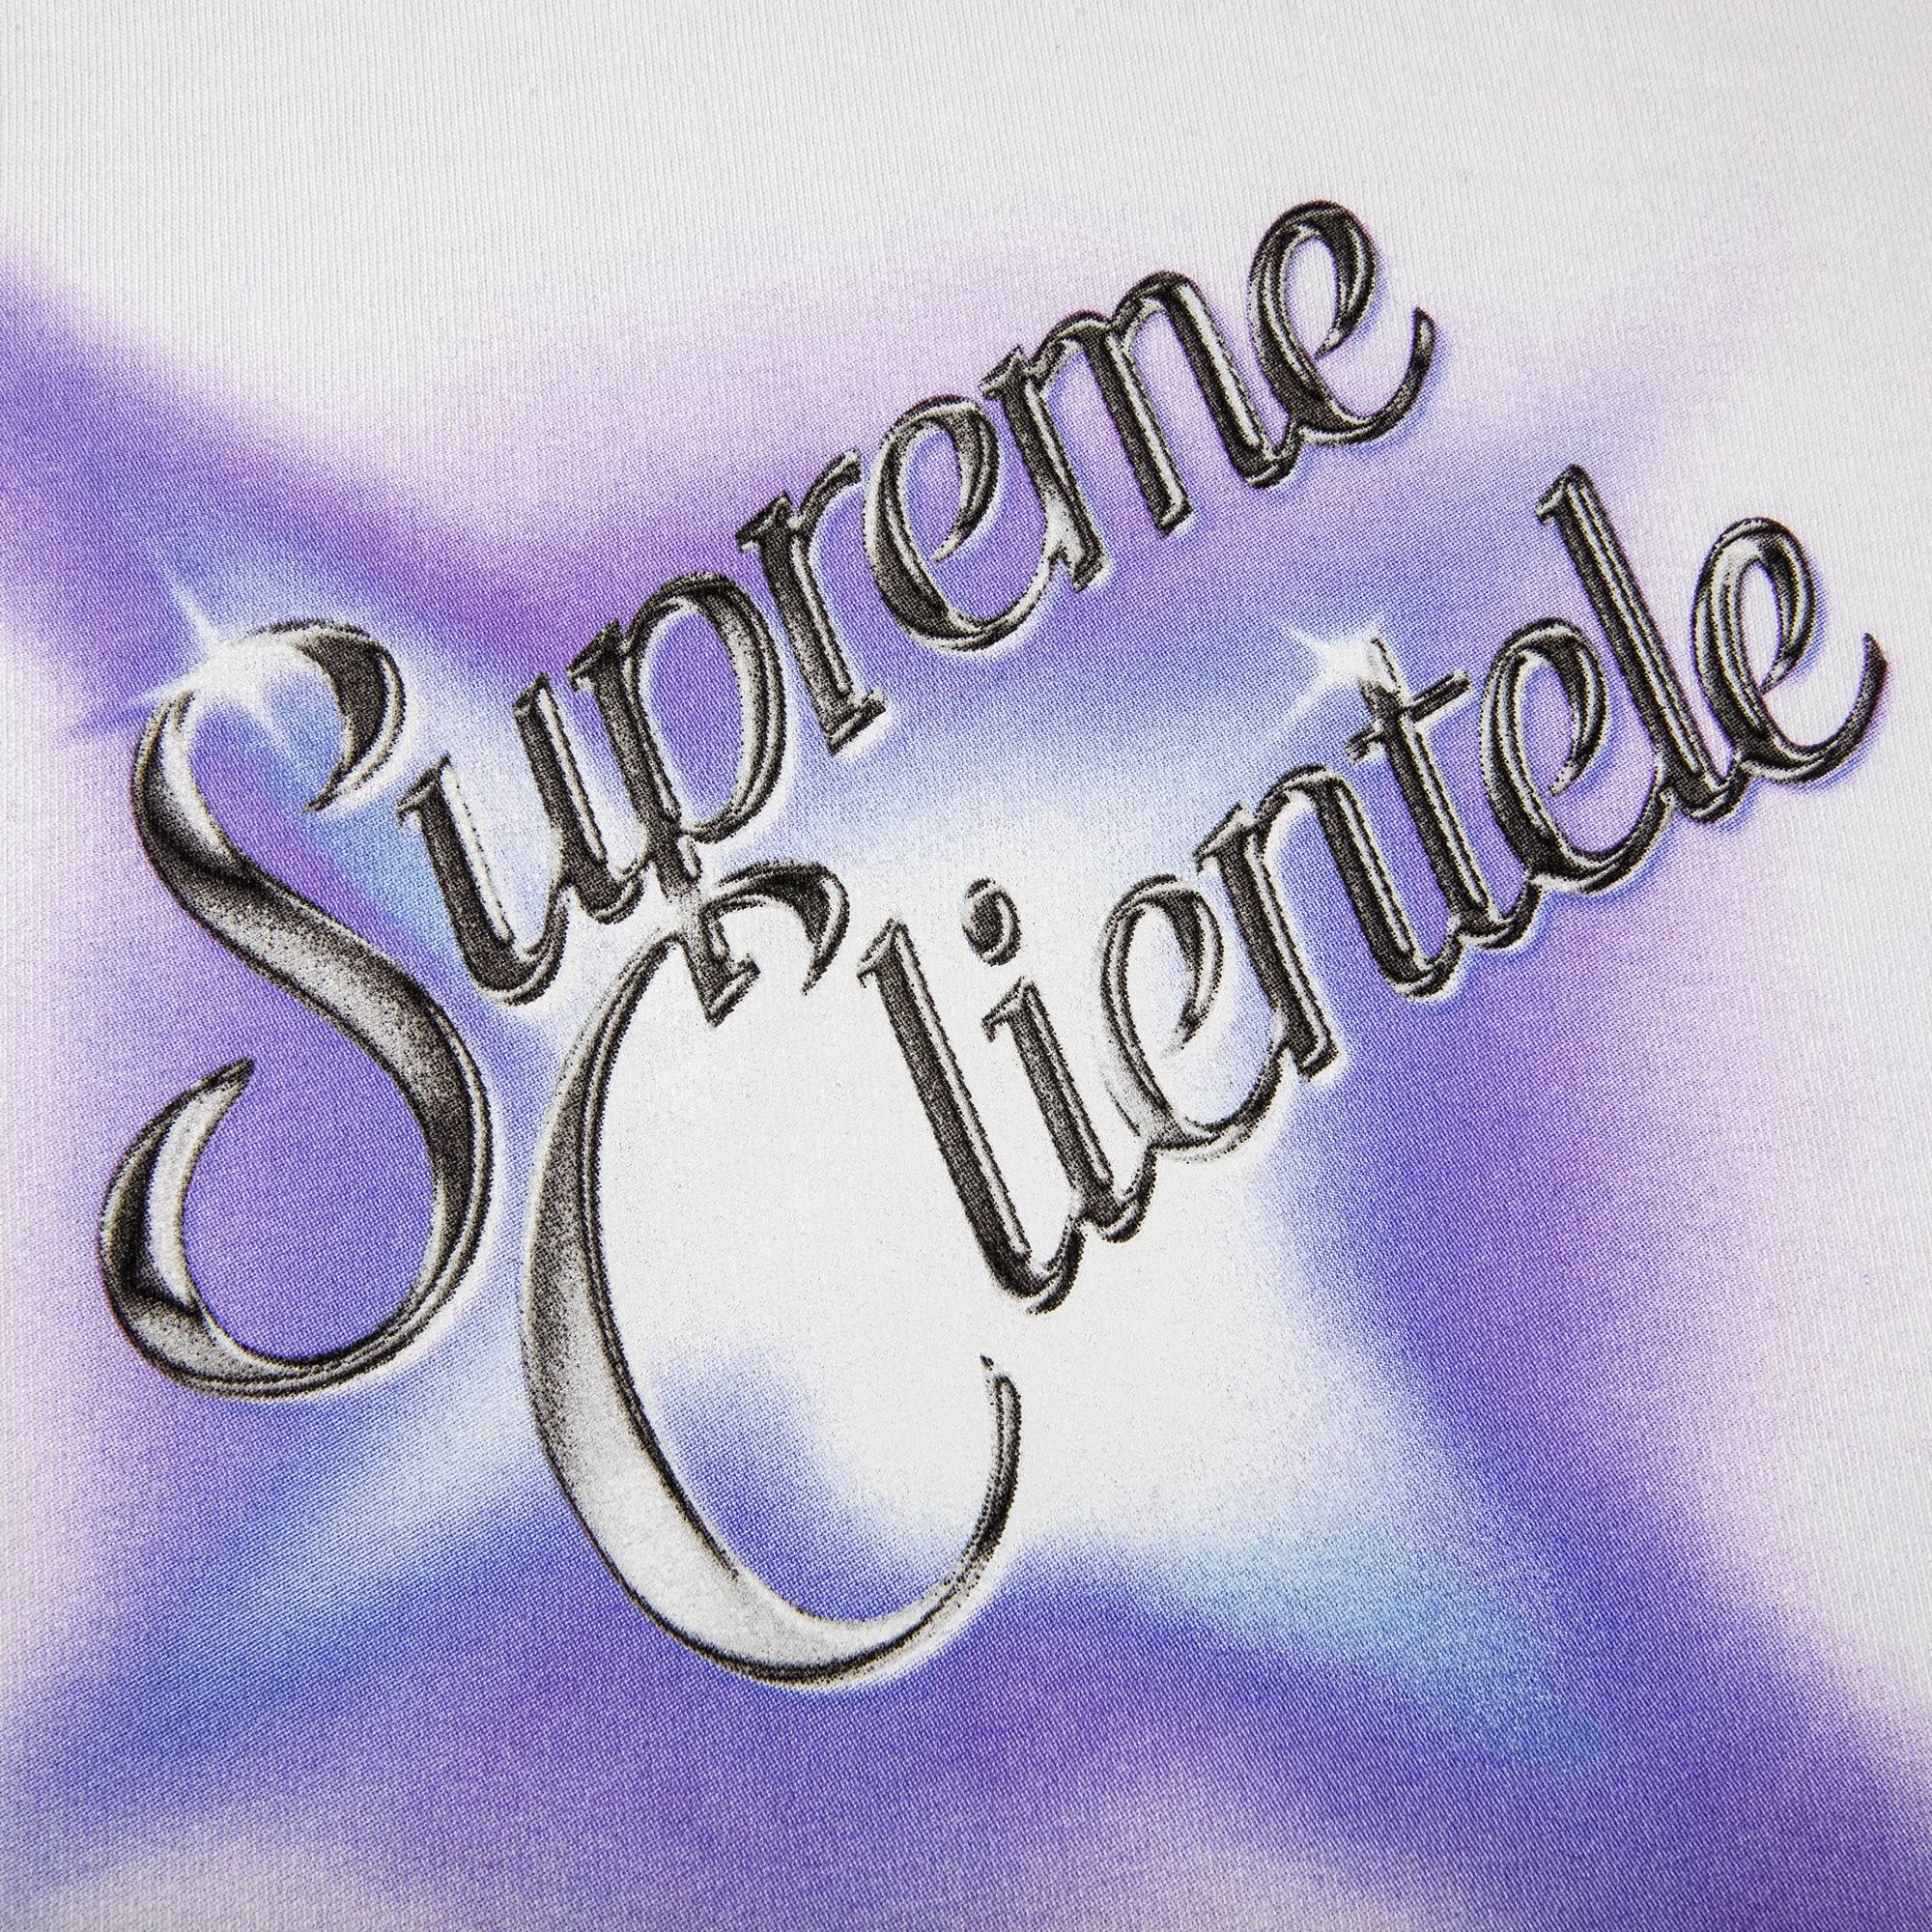 Supreme Supreme Clientele Tee White